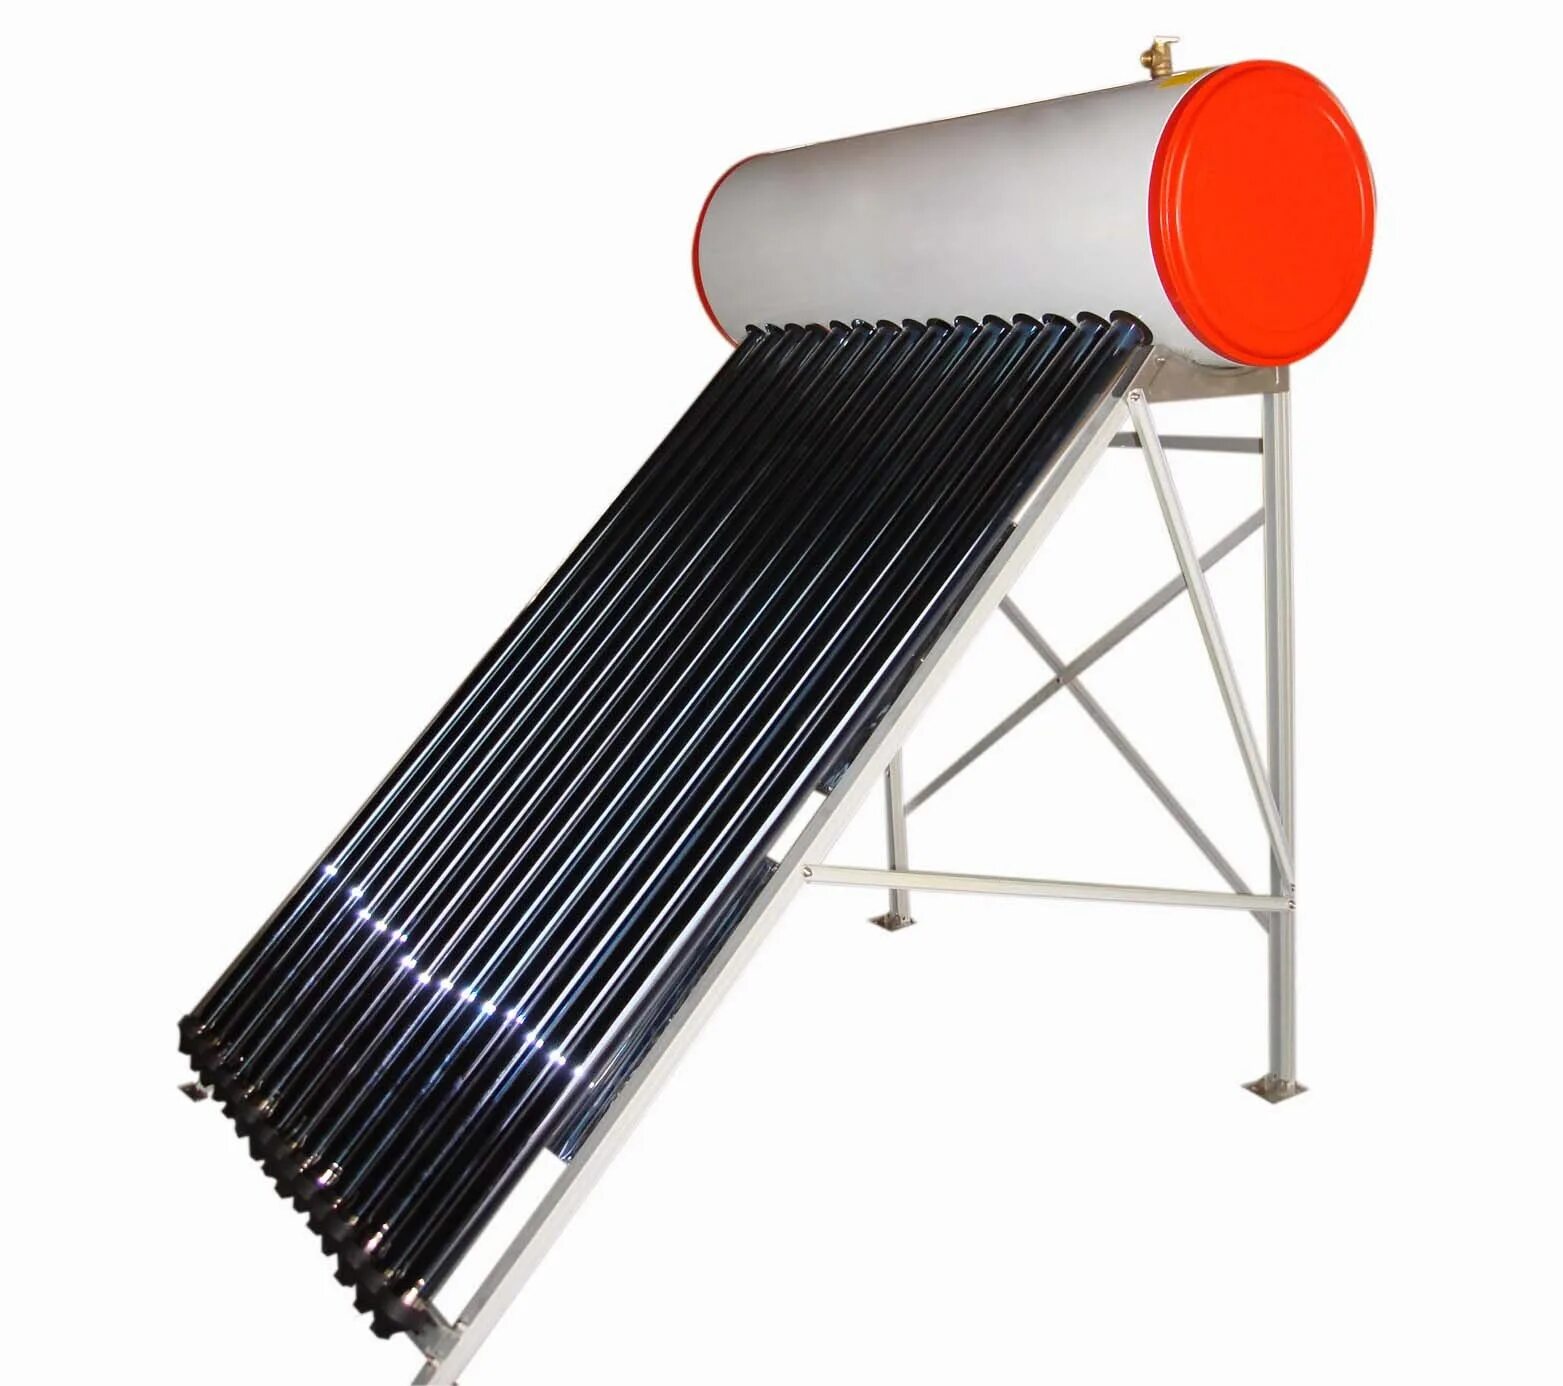 Нагревательный элемент тепла. Солнечный водонагреватель Heat Pipe jph200-20. Compact pressurized Solar Water Heater. Solar Heater нагреватель для воды 6 метров. Солнечный водонагреватель 100.